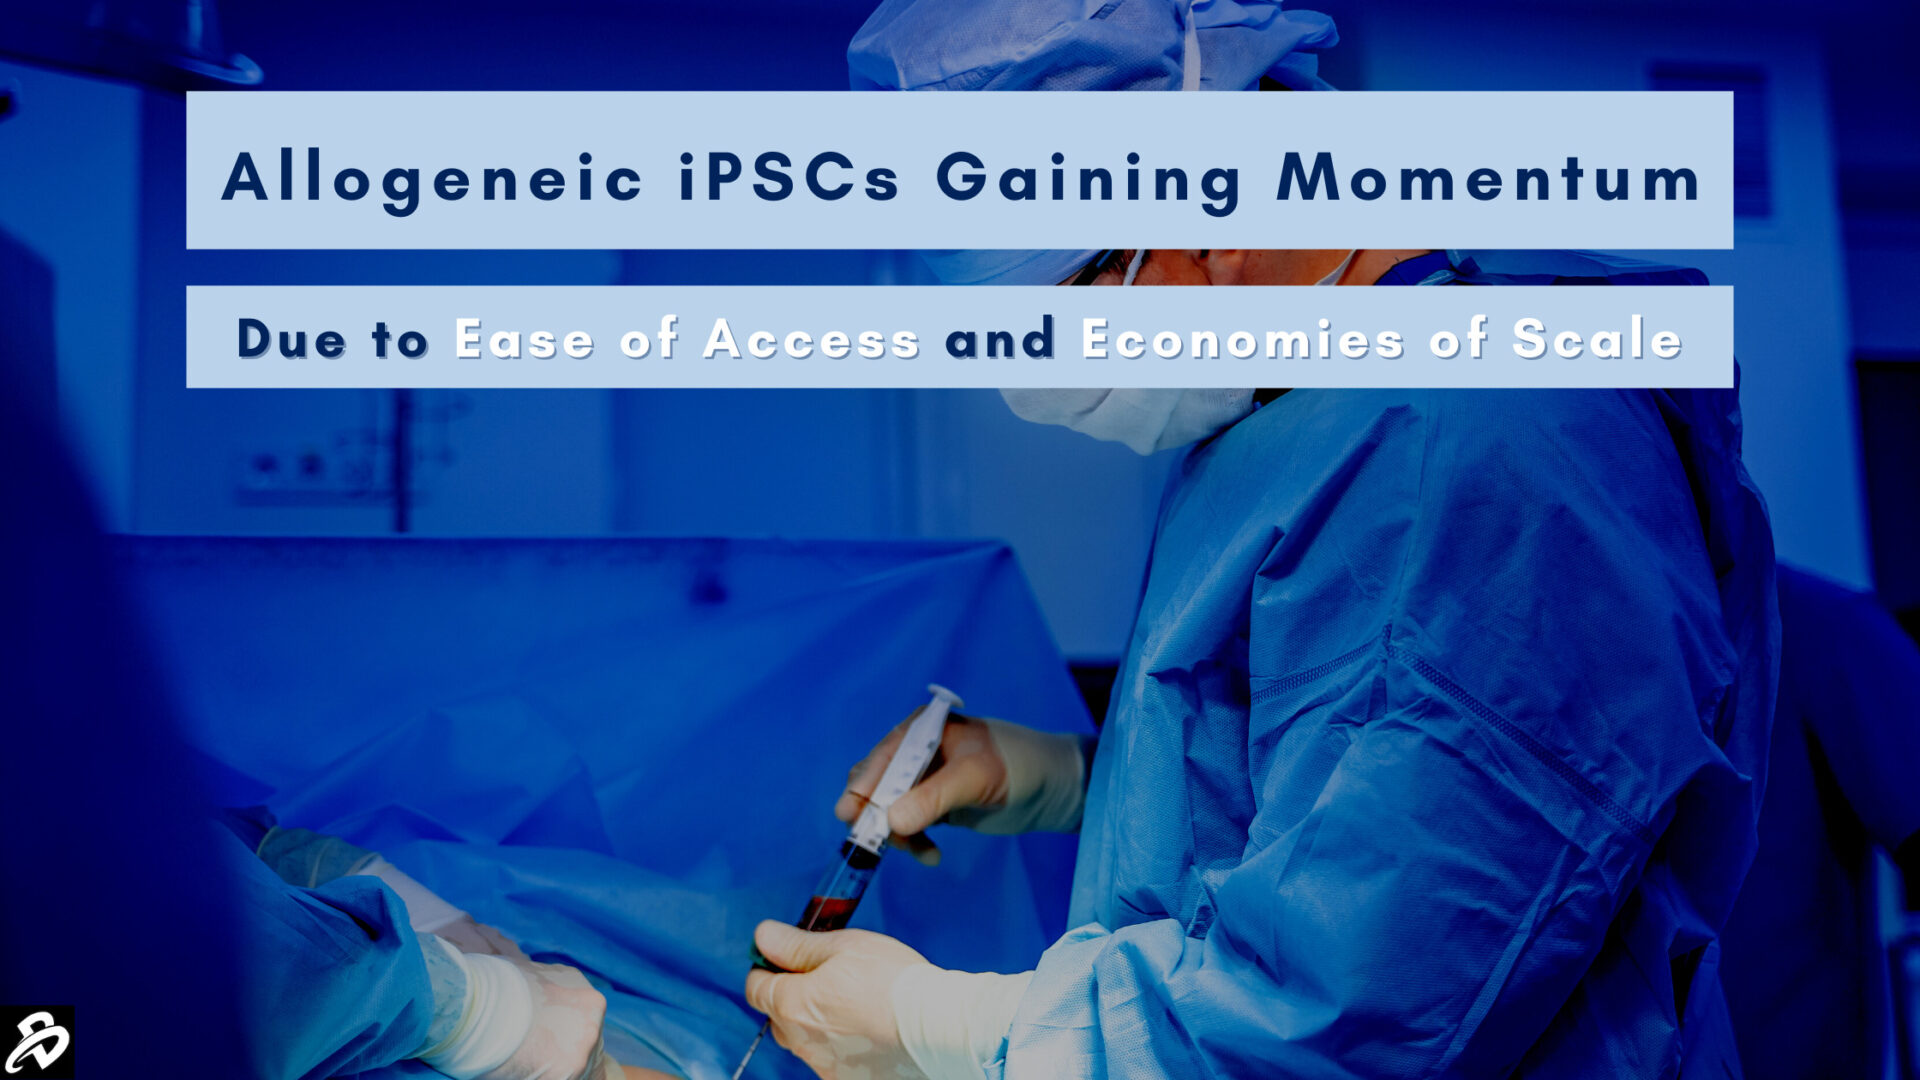 Allogeneic iPSCs